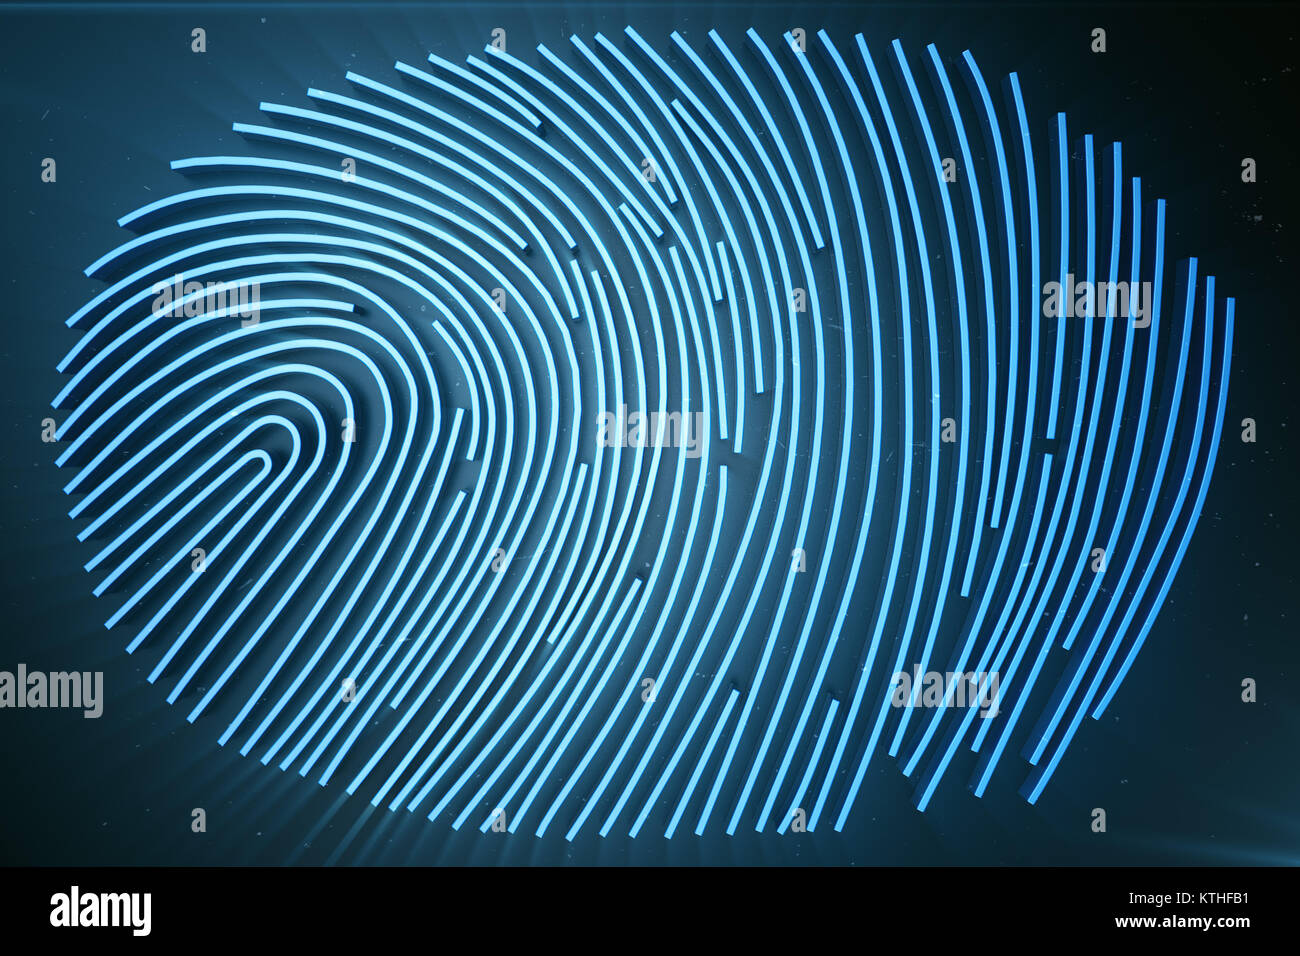 Scannen von Fingerabdrücken Identification System. Fingerprint Scan bietet Sicherheit für den Zugang mit Biometrie Identifikation. 3D-Rendering. Stockfoto